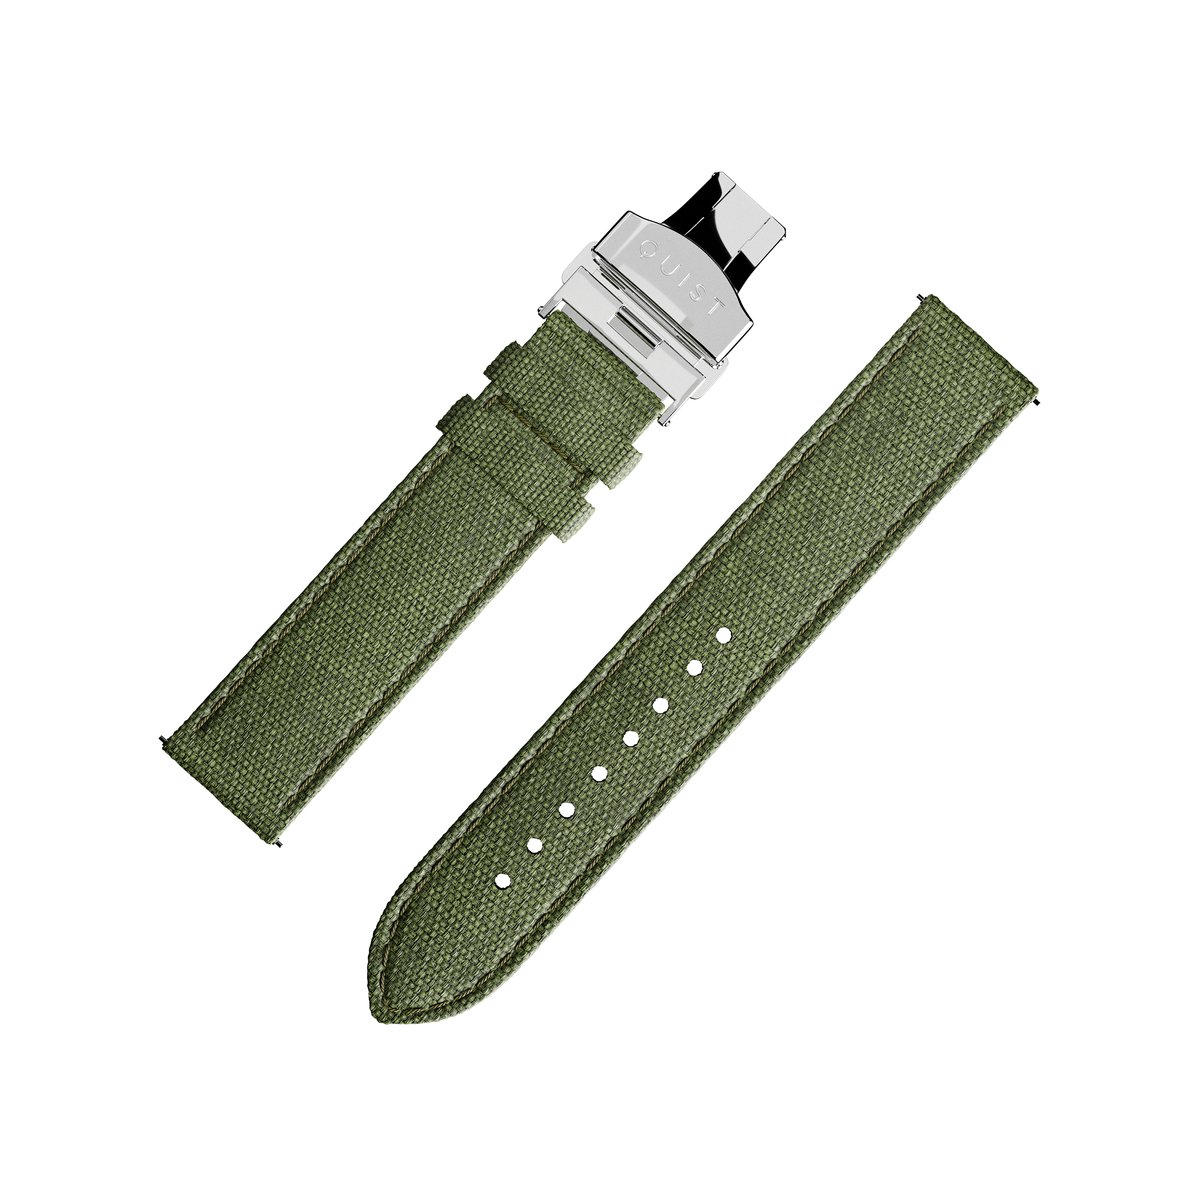 QUIST - horlogebandje - groen cordura - zilveren sluiting - 20mm